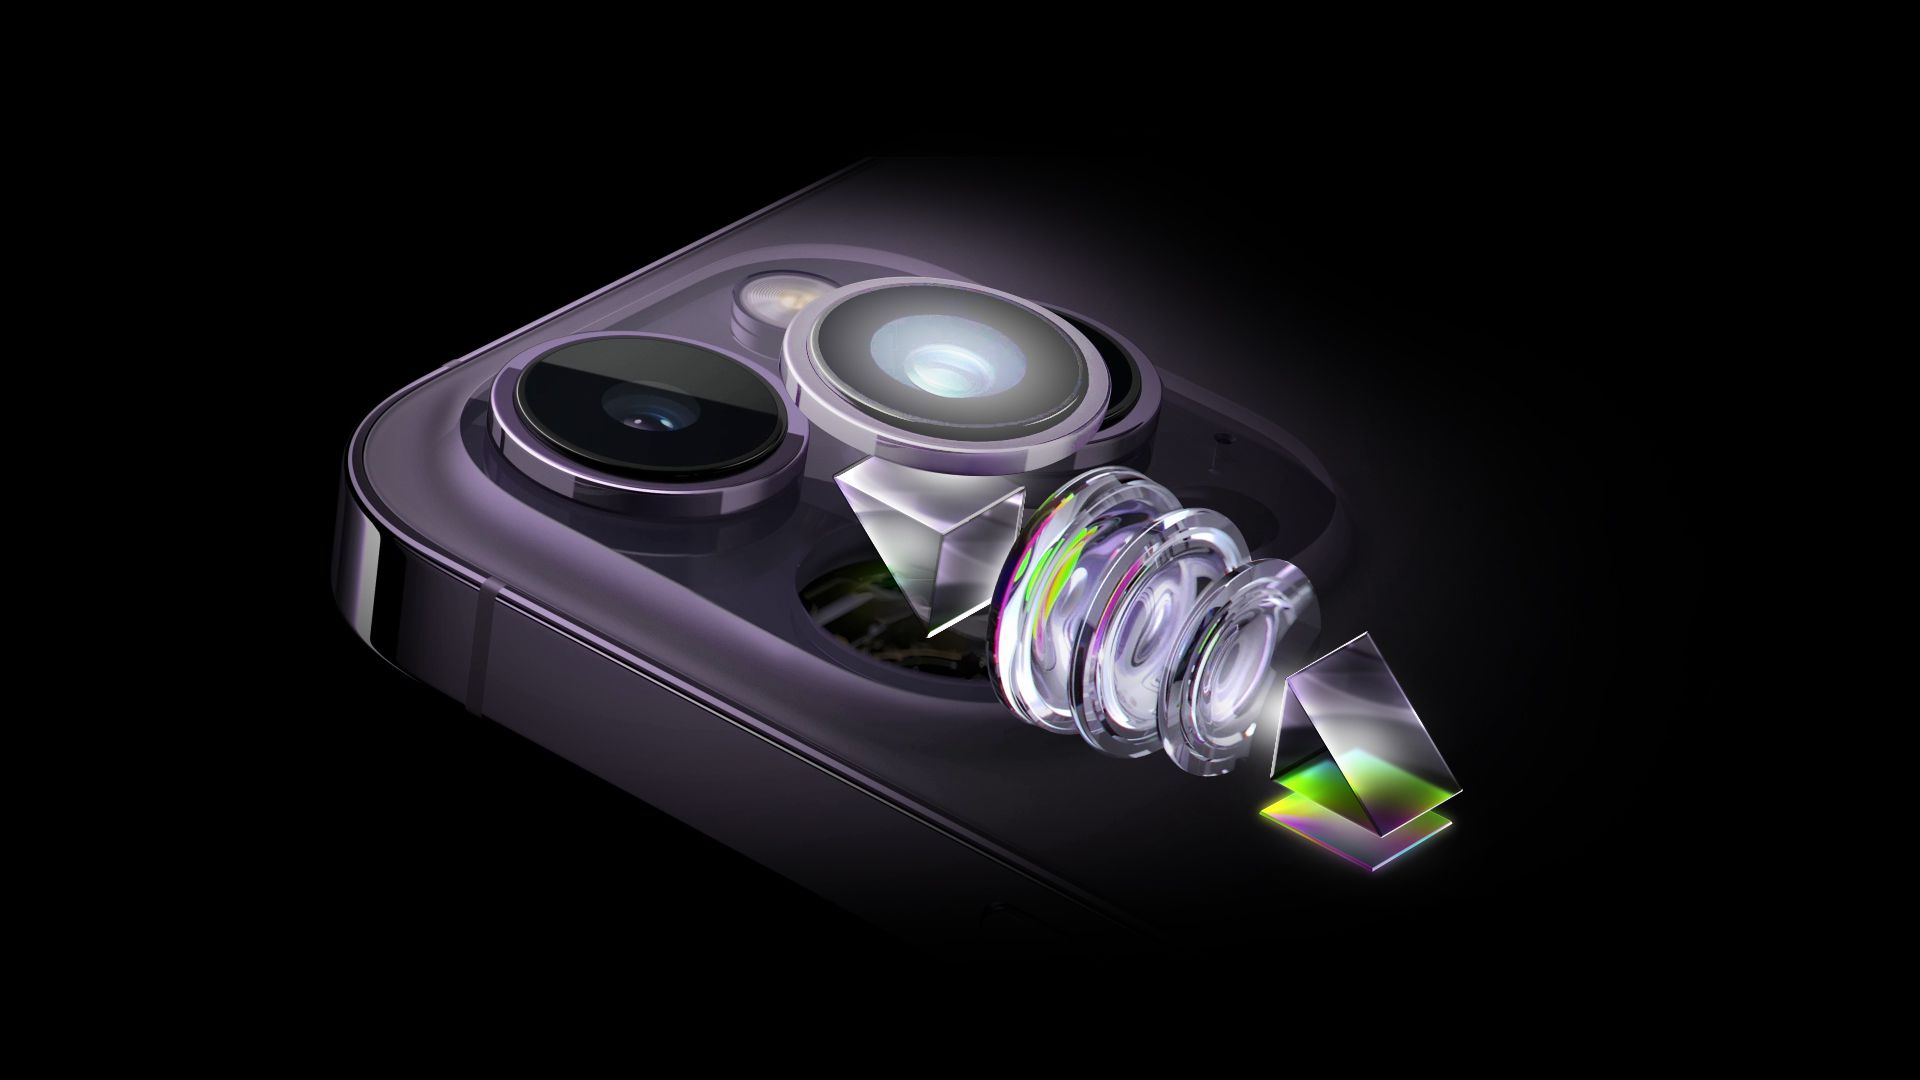 Das iPhone 15 Pro Max verfügt über ein neu angeordnetes Kameradesign, um ein Periscope-Objektiv aufzunehmen